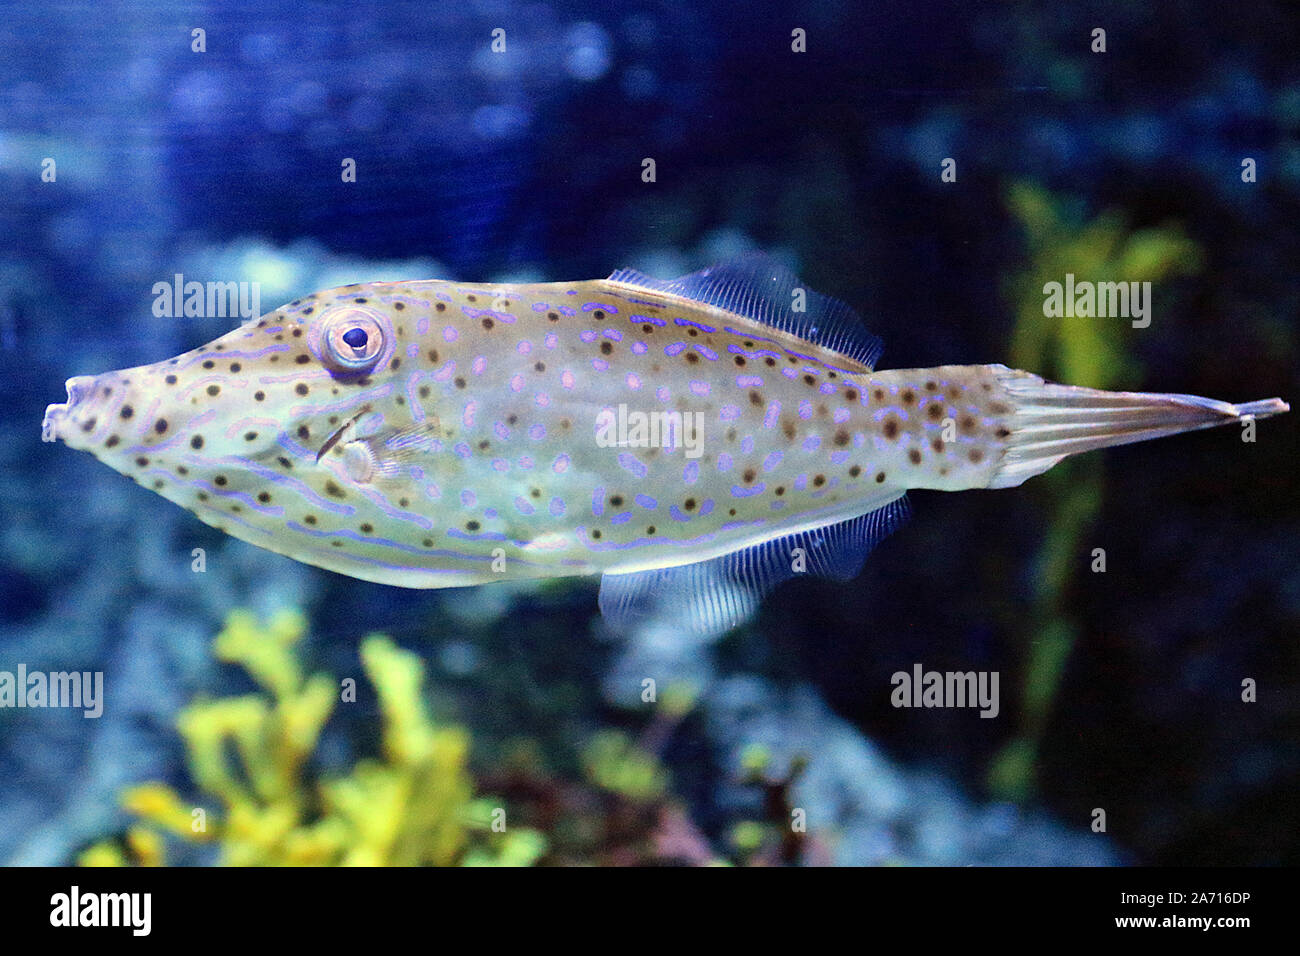 Aluterus scriptus, comunemente noto come scrawled filefish, broomtail filefish o scarabocchiati leatherjacket, è un mare di pesci appartenenti alla famiglia Monacanthidae. Foto Stock